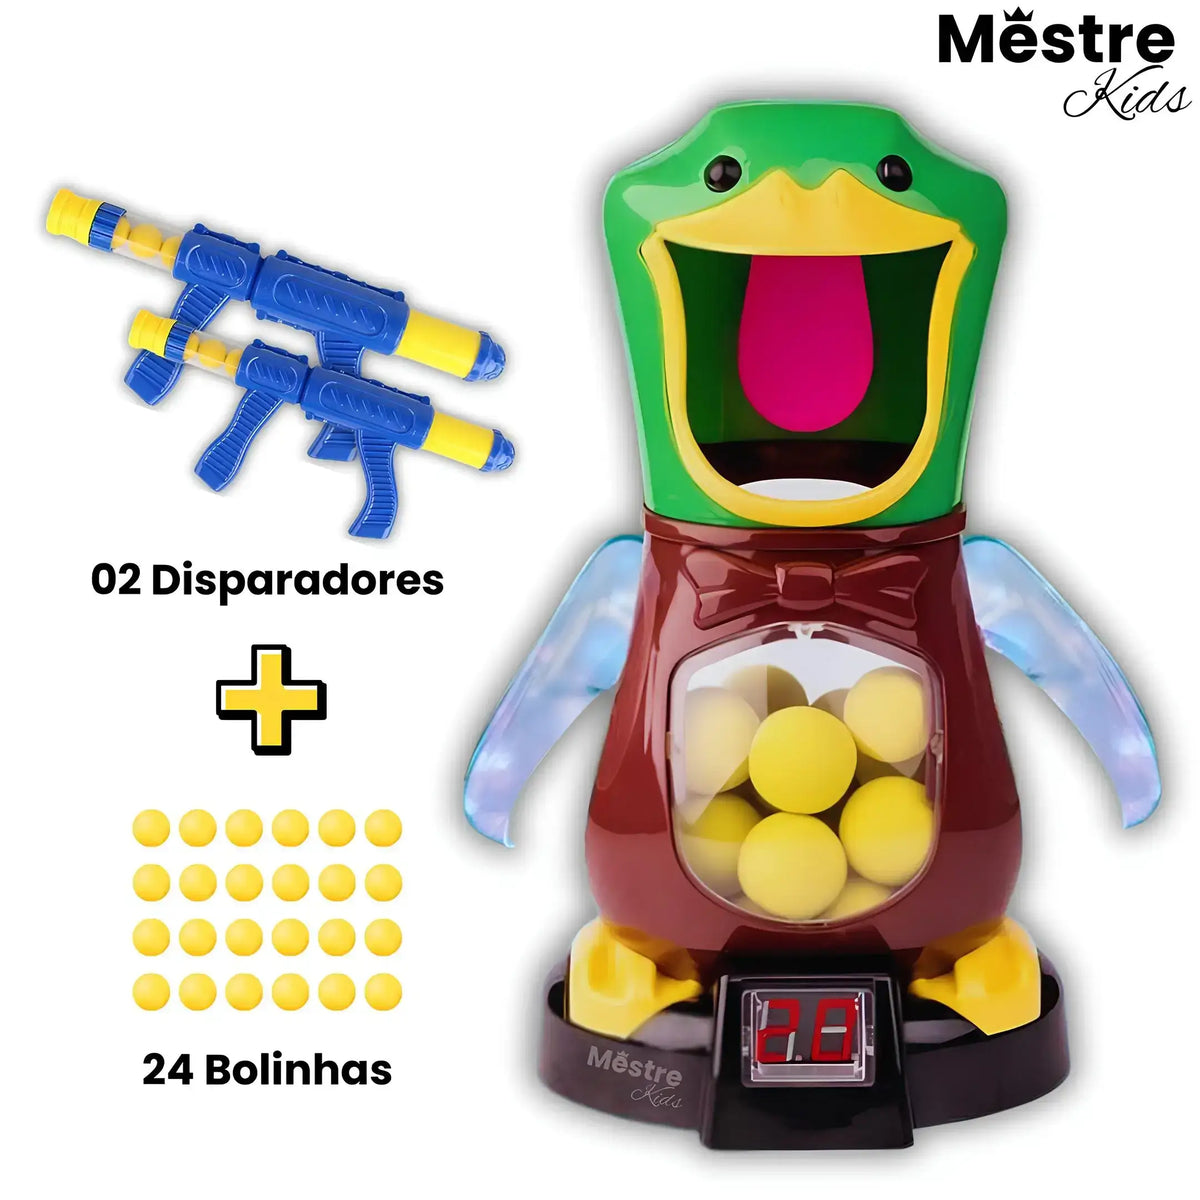 Caça ao Pato Mestre Kids® + 24 Bolinhas + 2 Disparadores